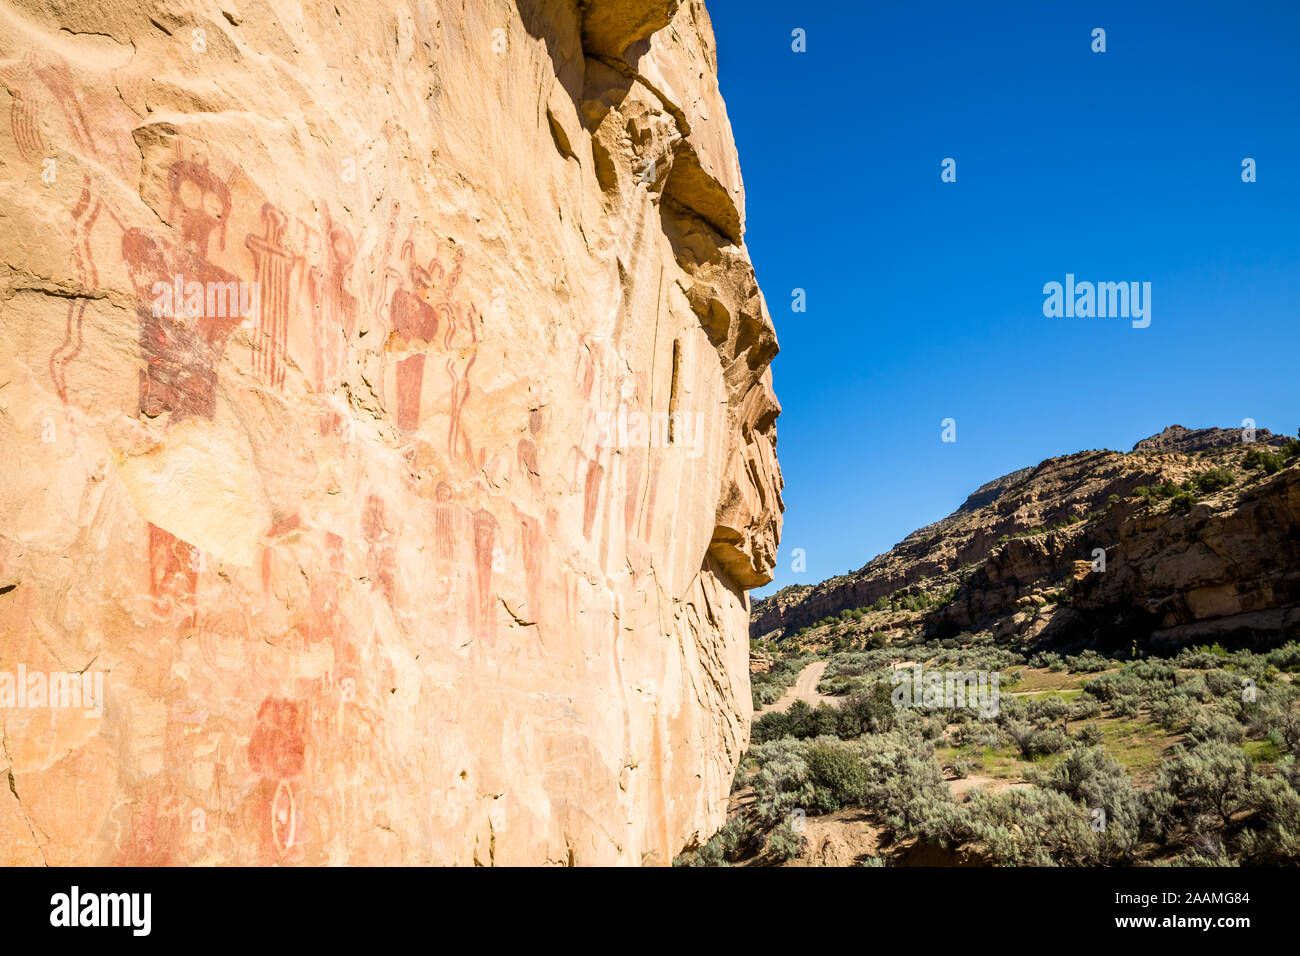 Red Piktogramme (nicht Felszeichnungen) der zentralen Utah. Auf orange Sandstein in der Wüste von Utah in der Nähe von San Rafael Swell und Green River, Utah gemalt. Stockfoto